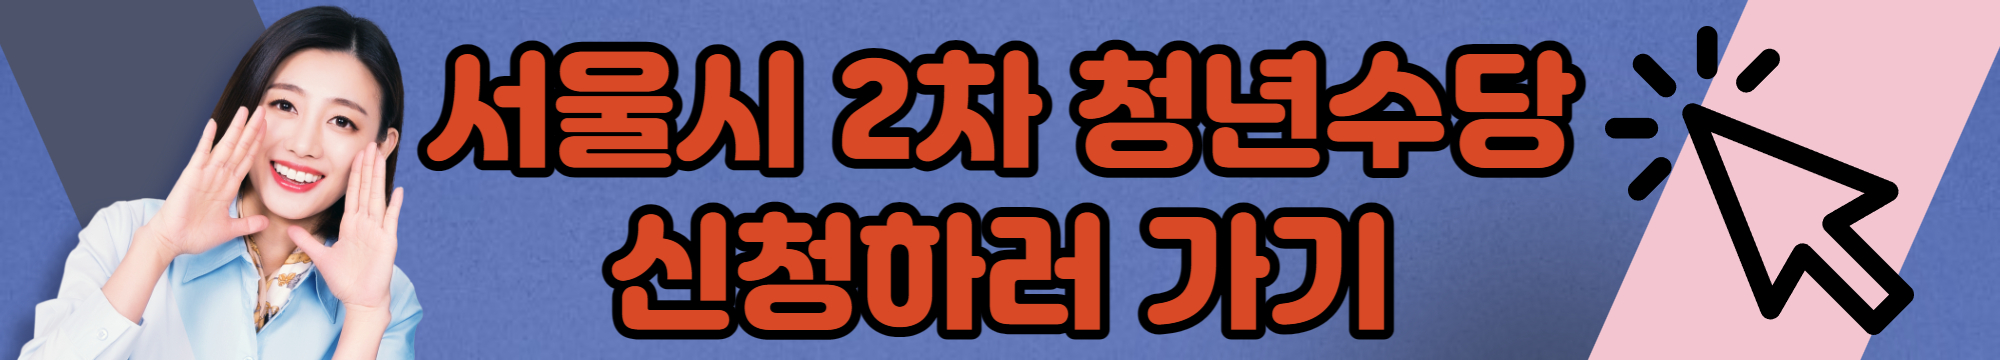 서울시-2차-청년수당-신청